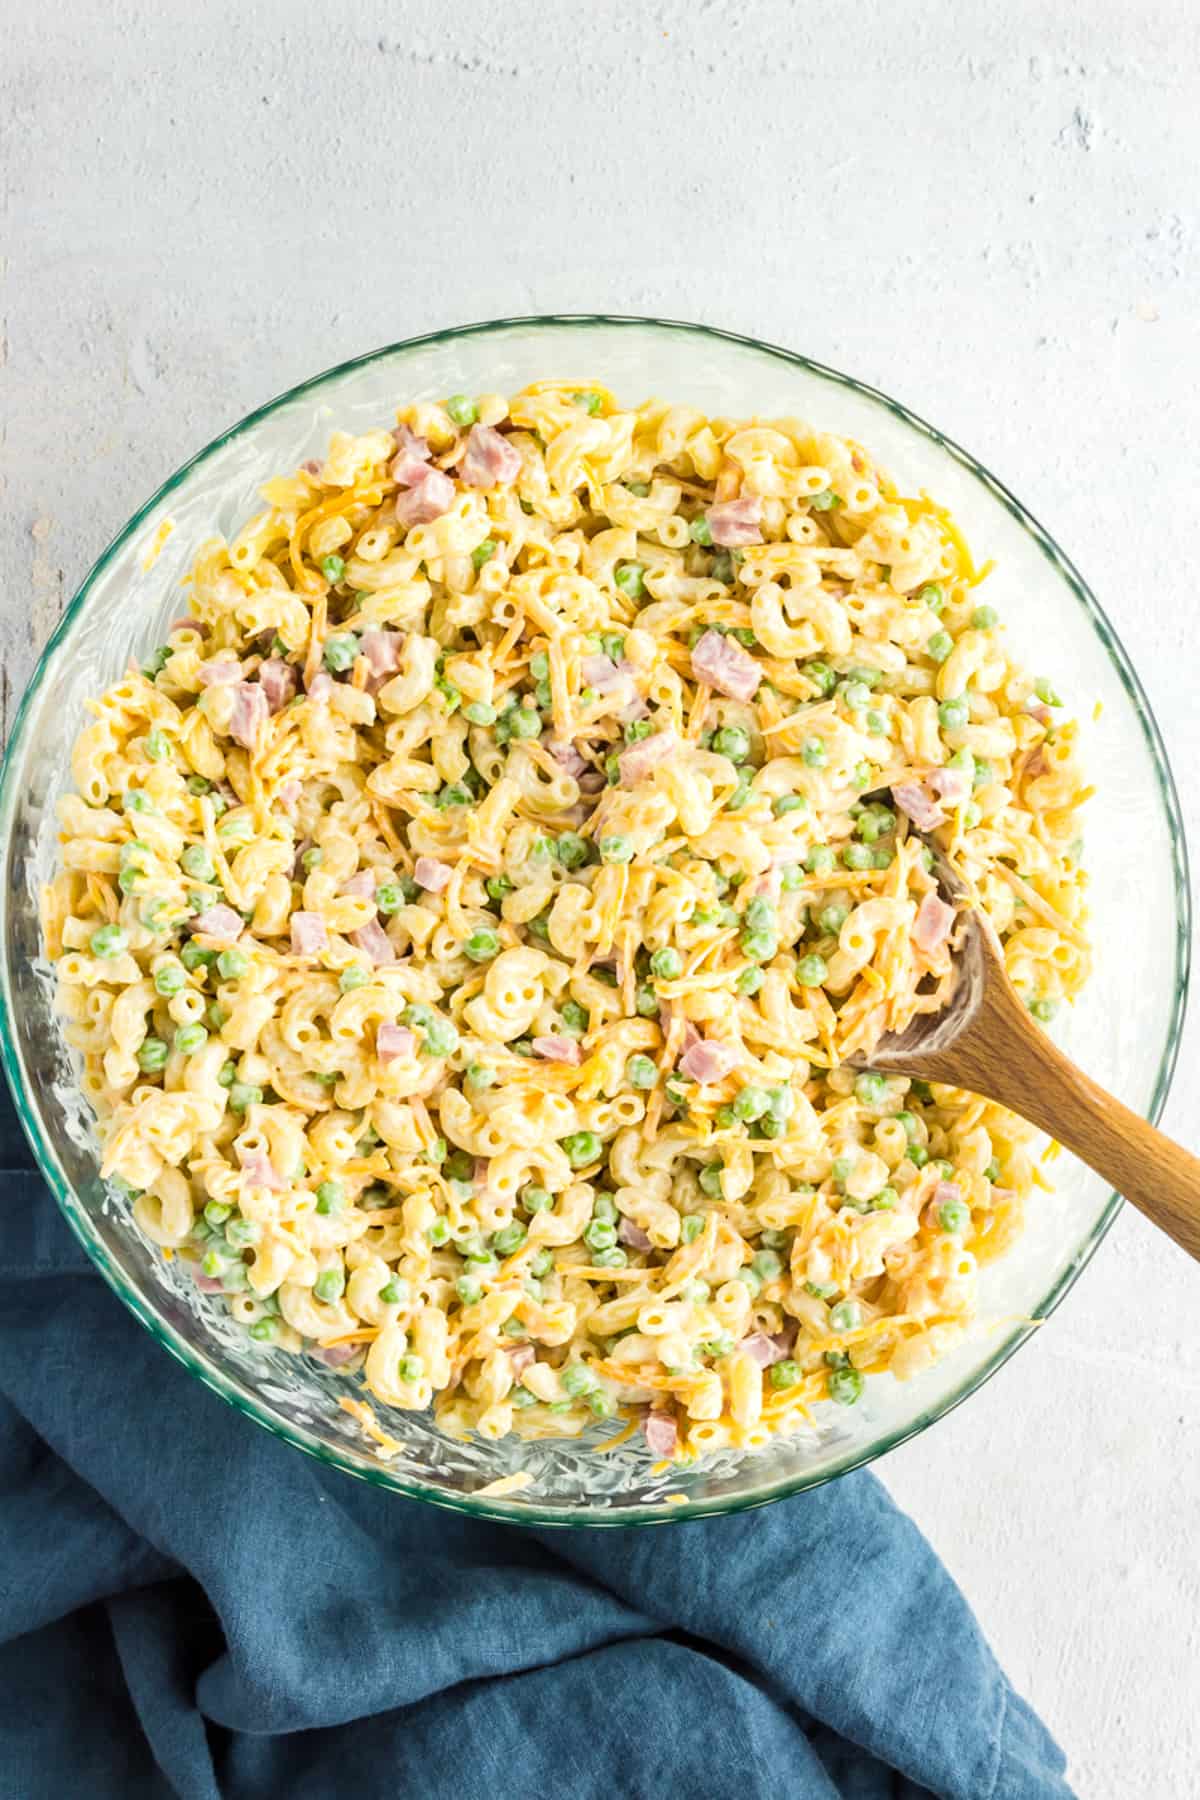 spoon in bowl of macaroni salad